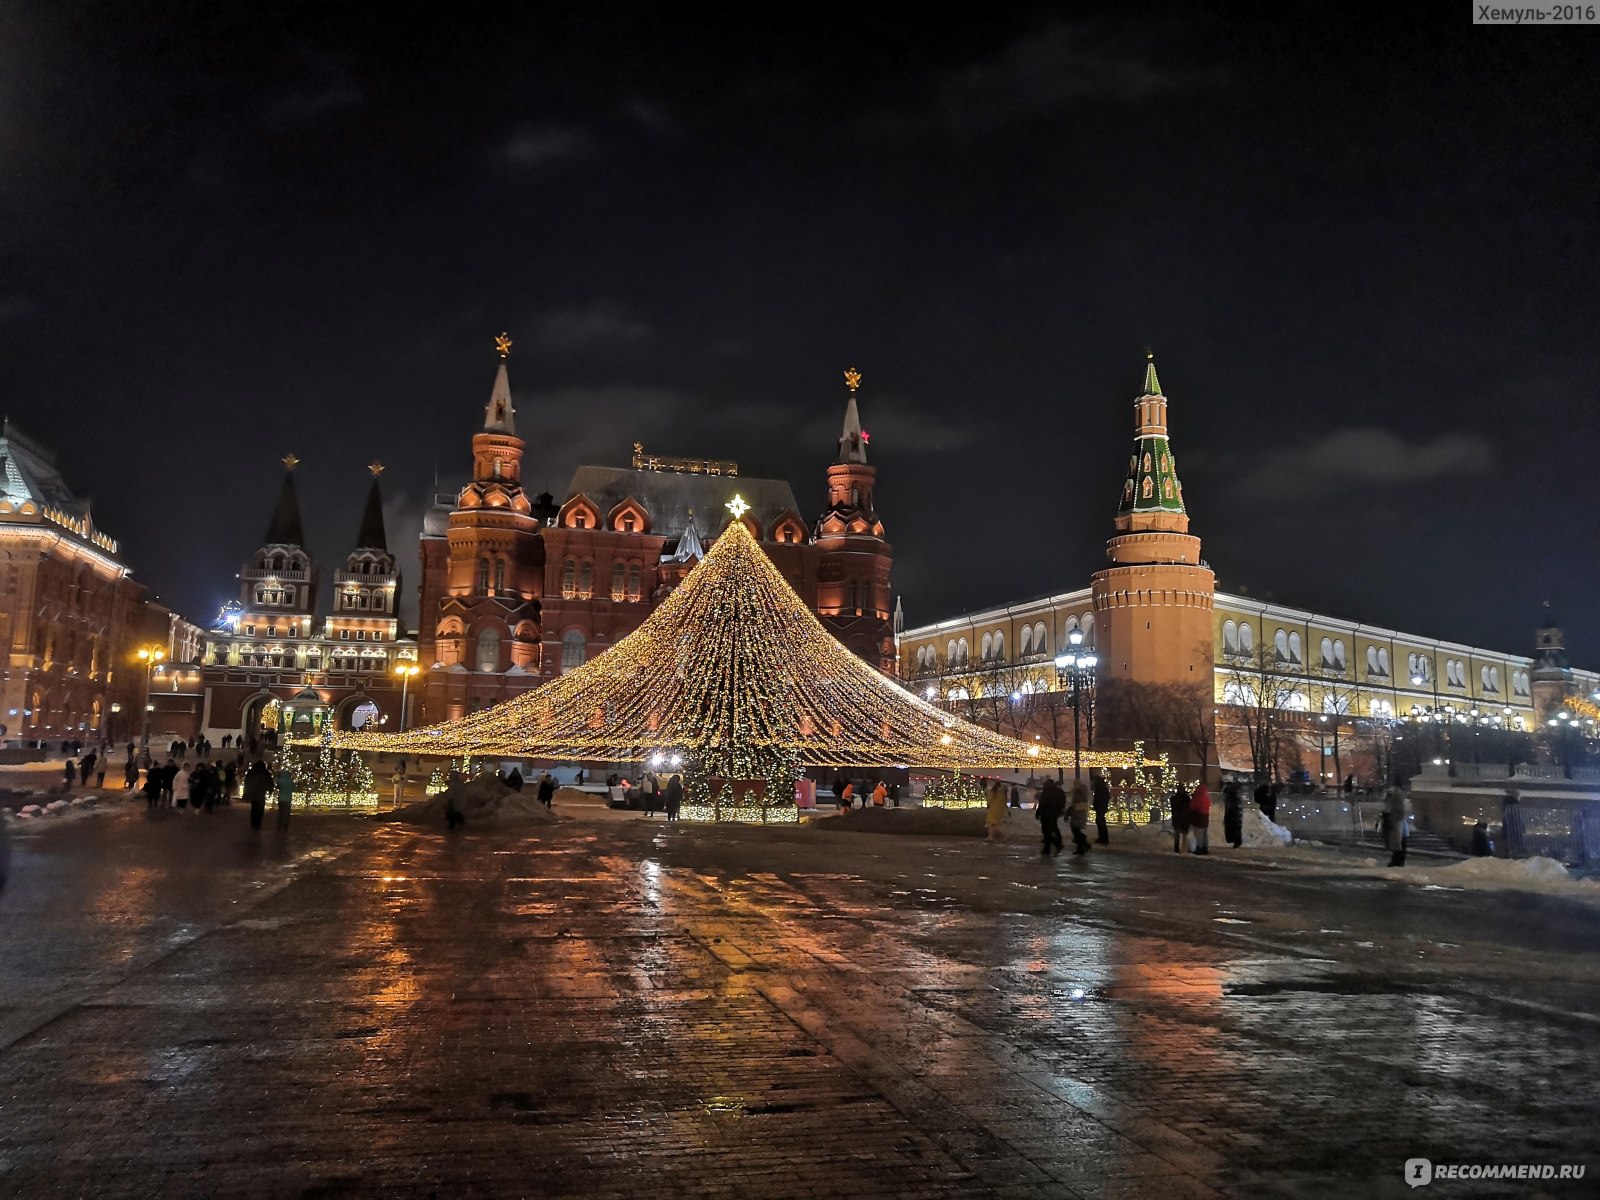 Путешествие в Рождество 2022 в Москве